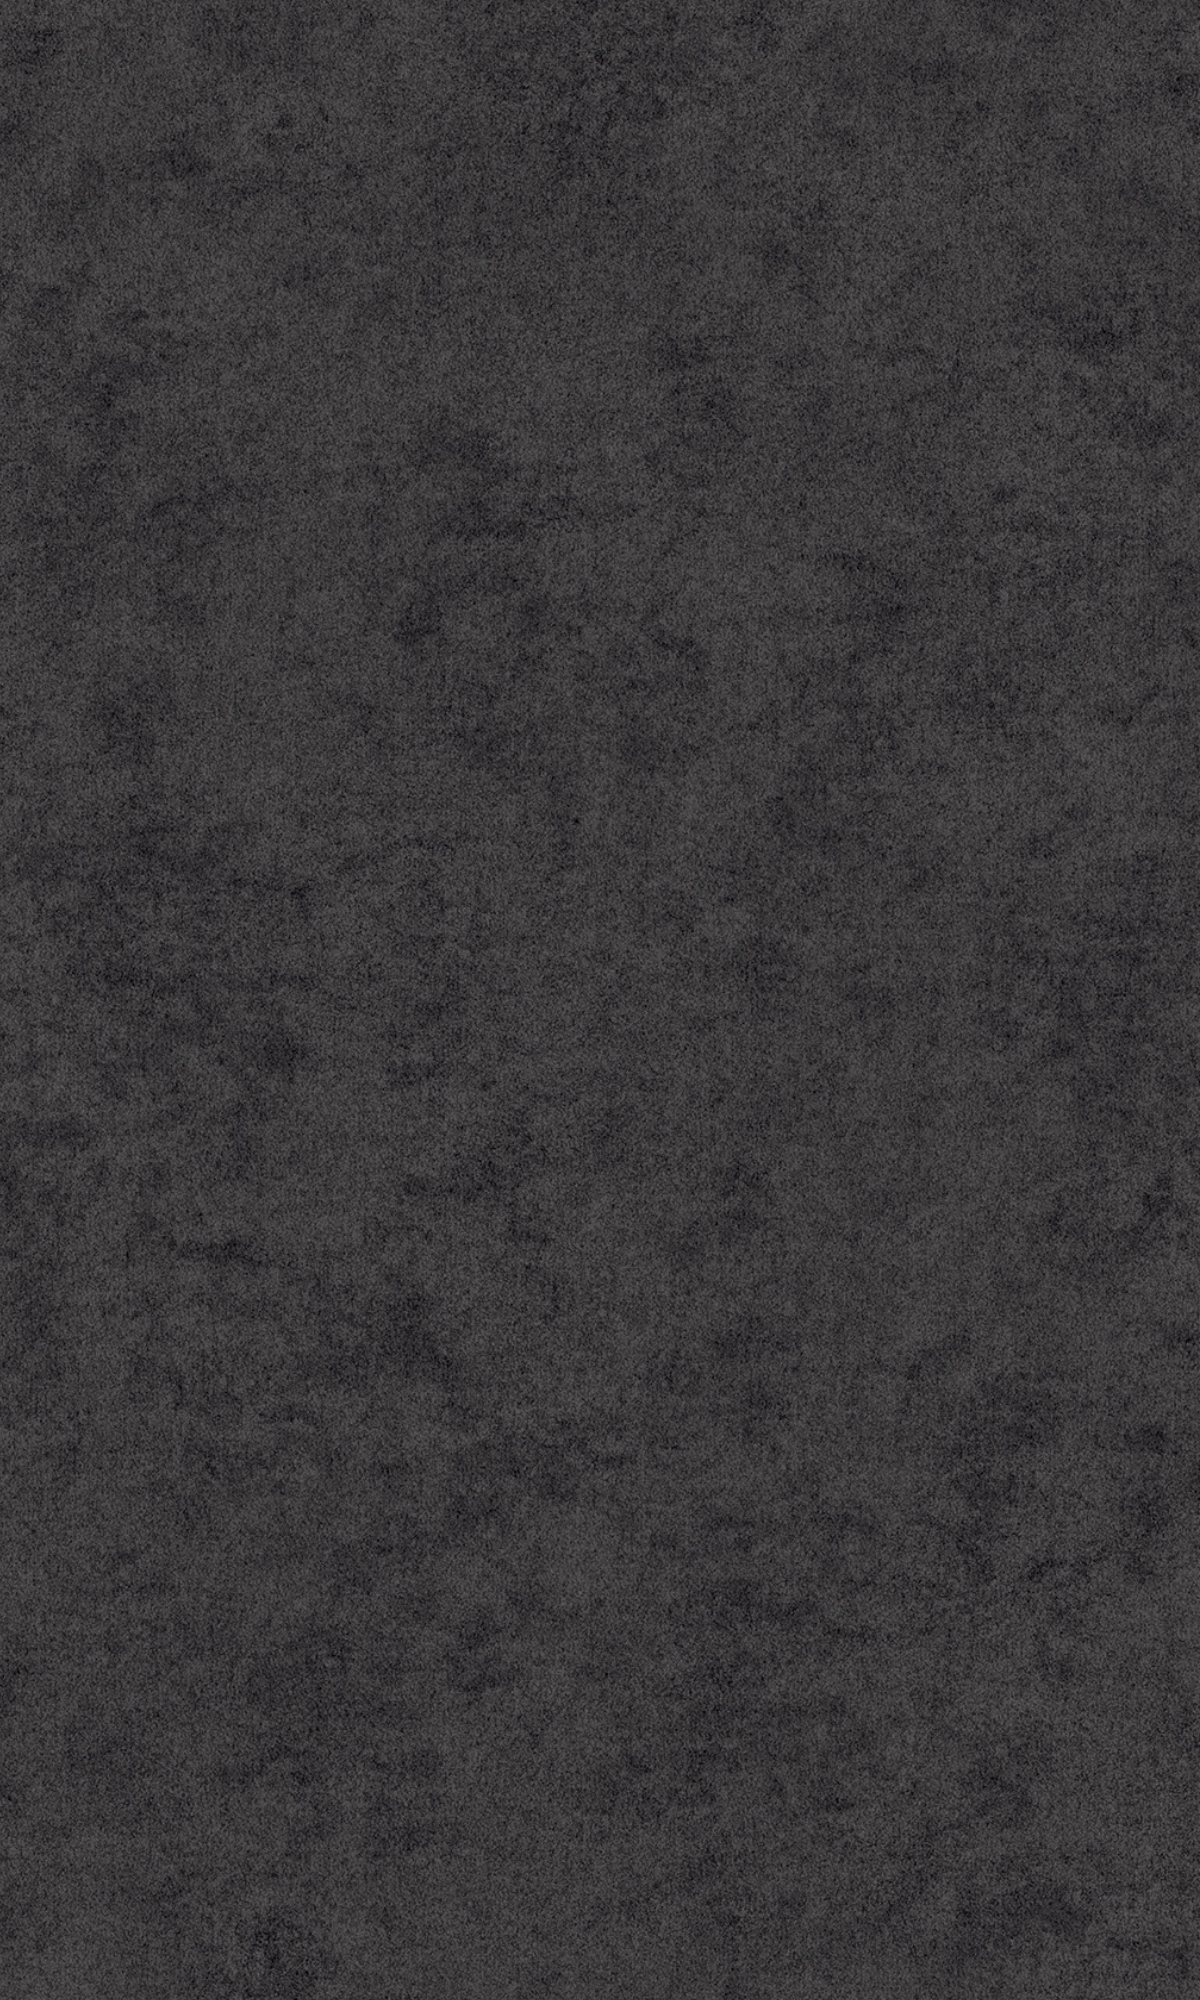 Anthracite Plain Cloudy Concrete Wallpaper R8071